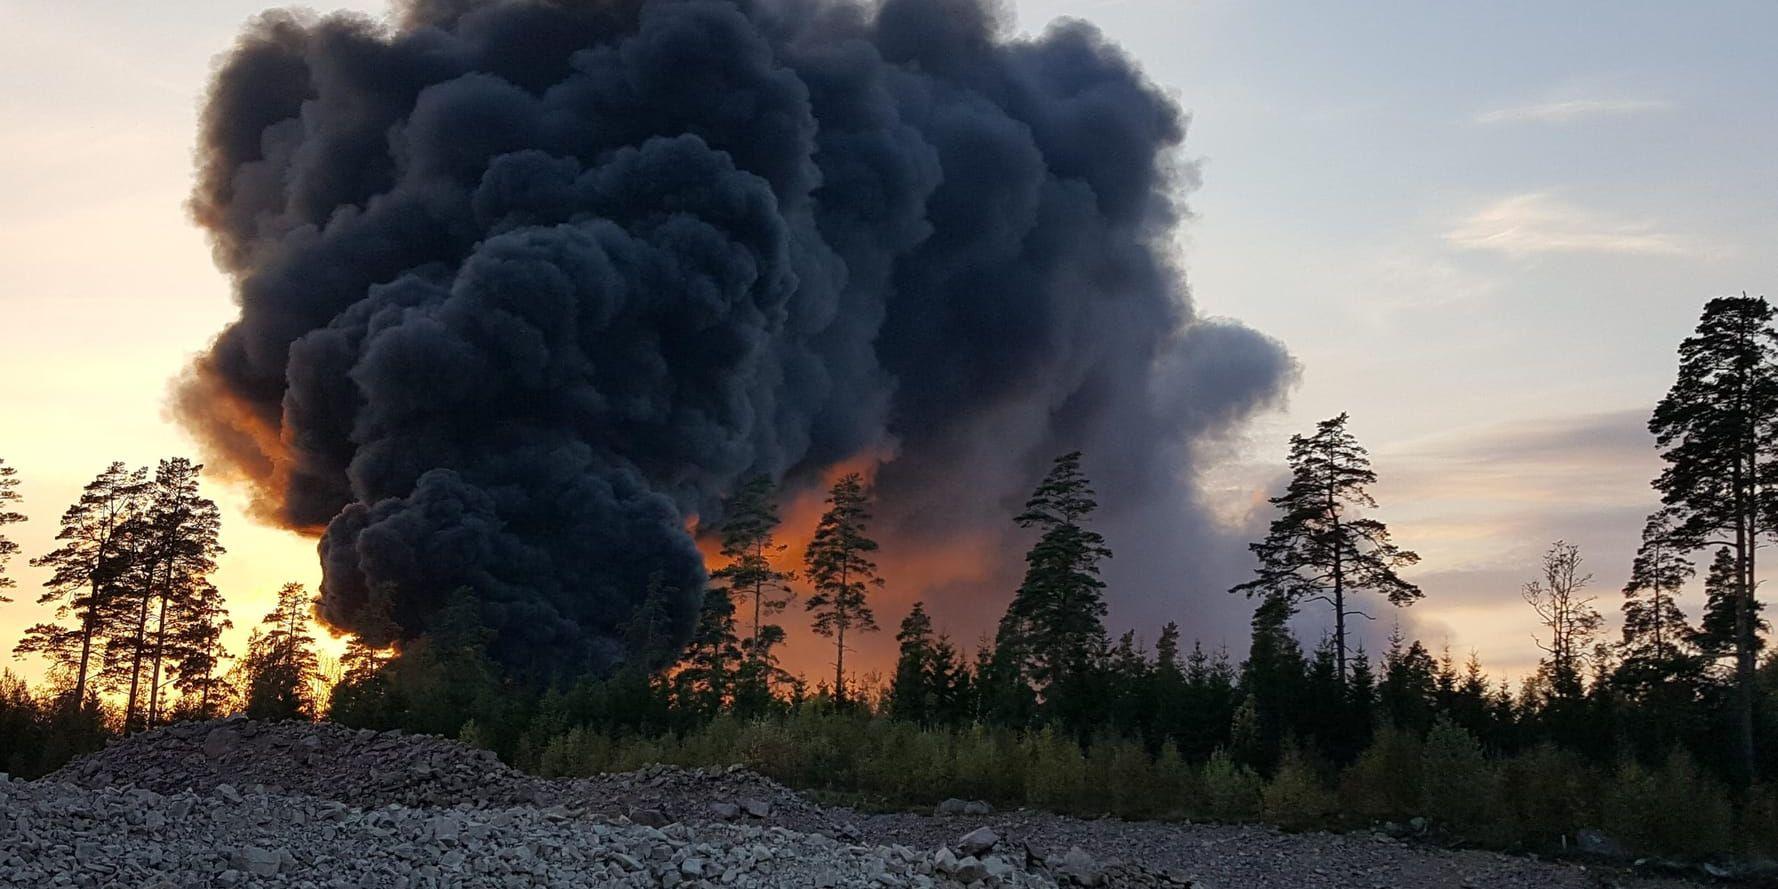 Giftig rök sprids i Nässjö från en omfattande brand vid en återvinningsanläggning. De som bor i vindriktningen från branden uppmanas att hålla sig inomhus, stänga fönster och slå av ventilationen.